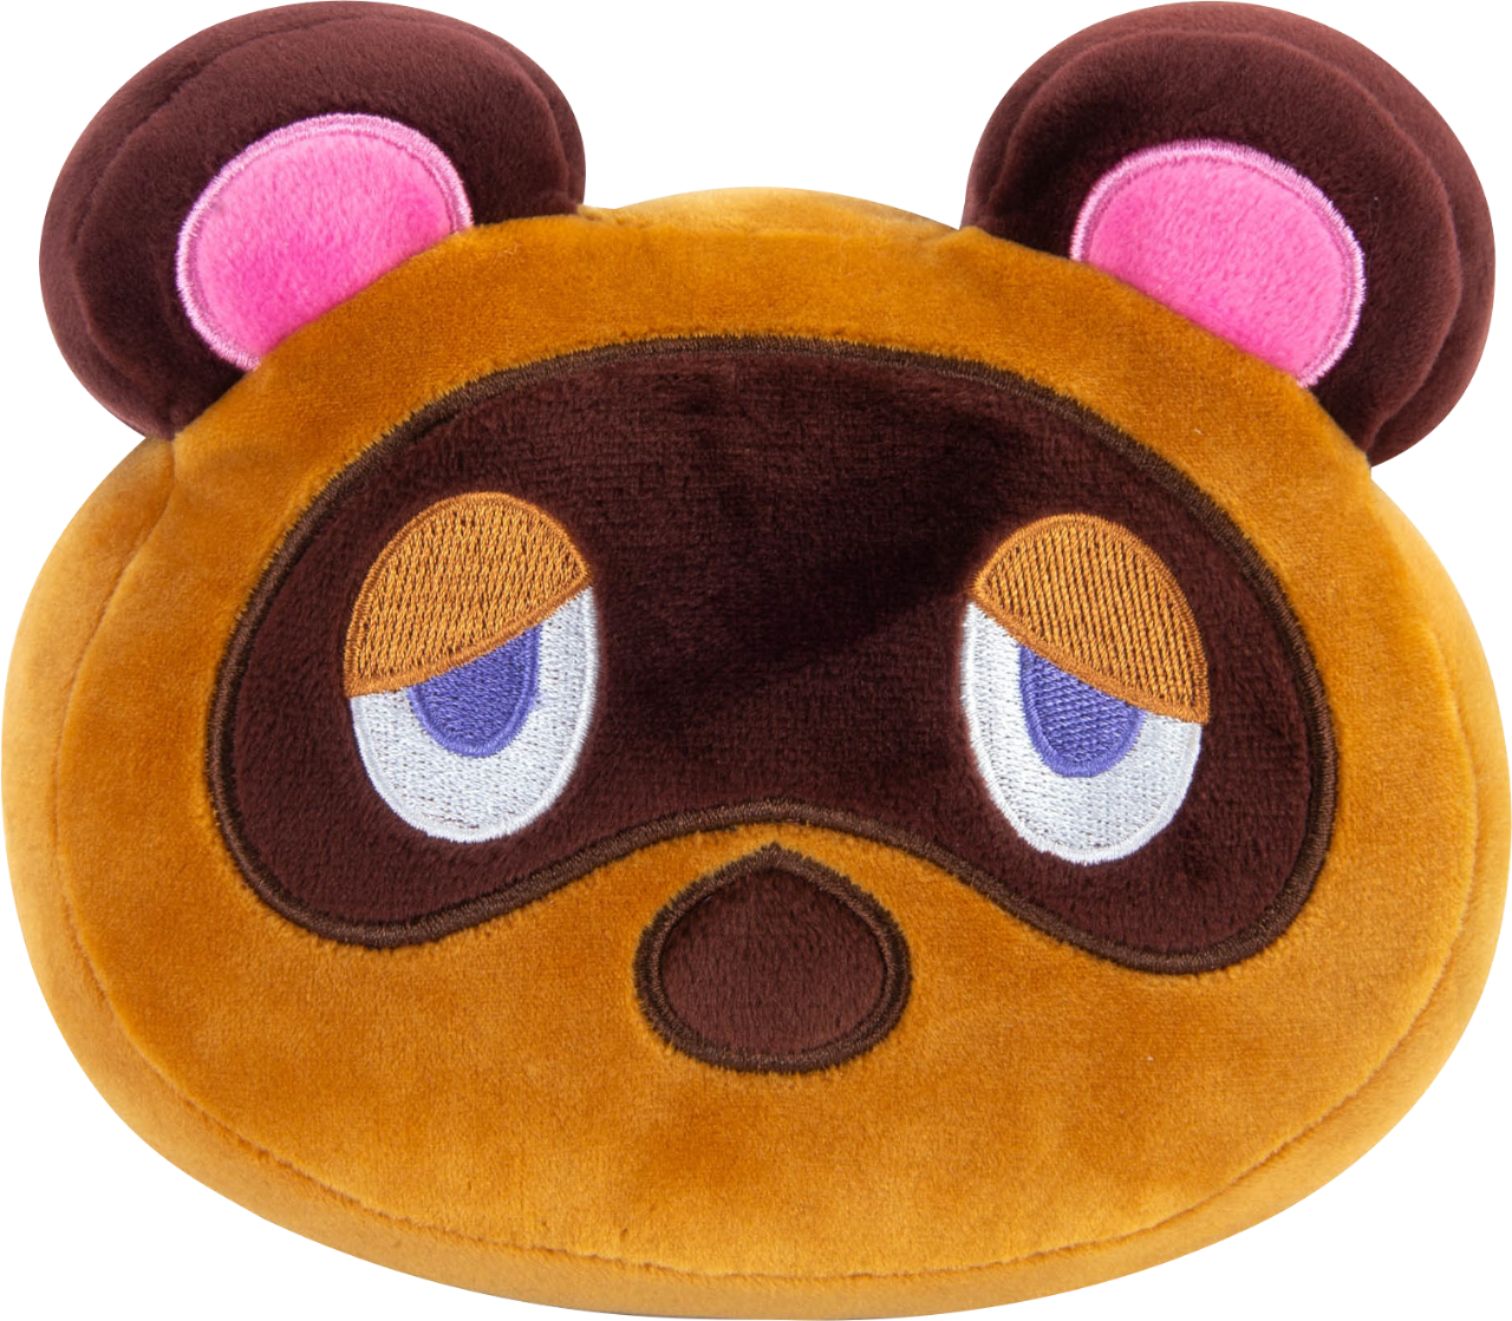 TOMY - Club Mocchi-Mocchi - Nintendo Animal Crossing Junior 6 inch Plush Stuffed Toy Asst